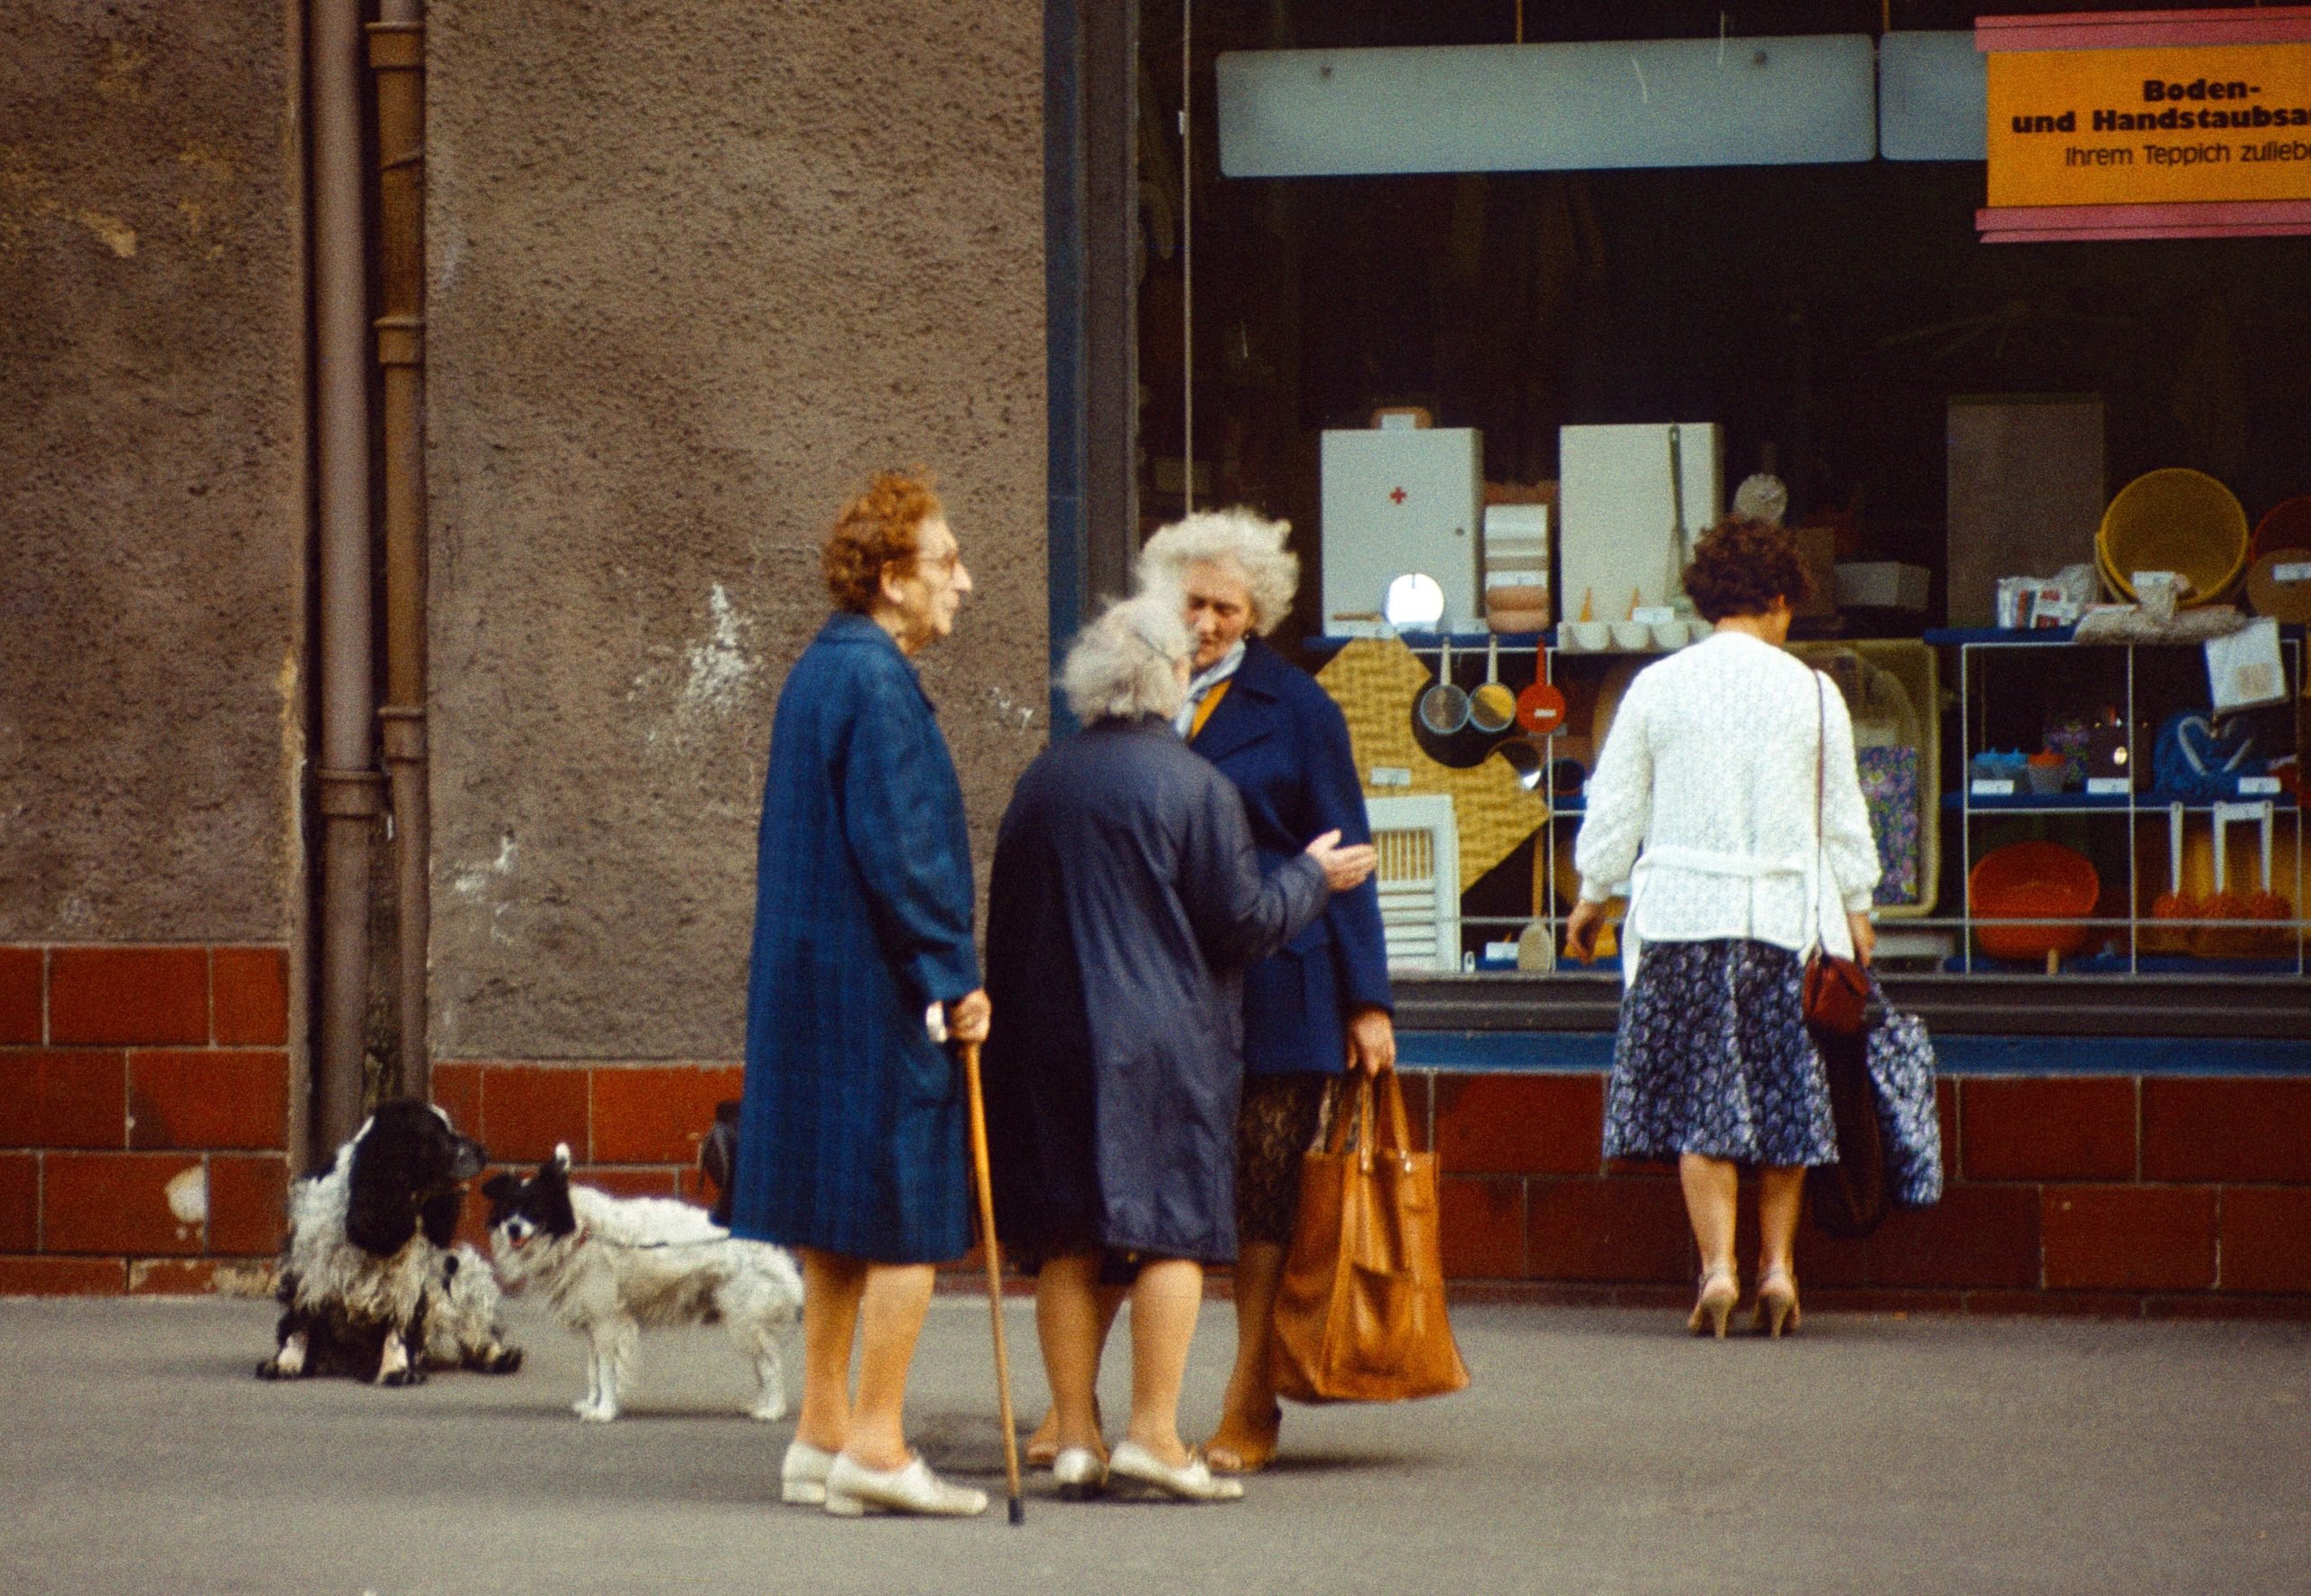 Ältere Frauen unterhalten sich auf der Strasse, Ost-Berlin 1985. Foto: Imago/Frank Sorge